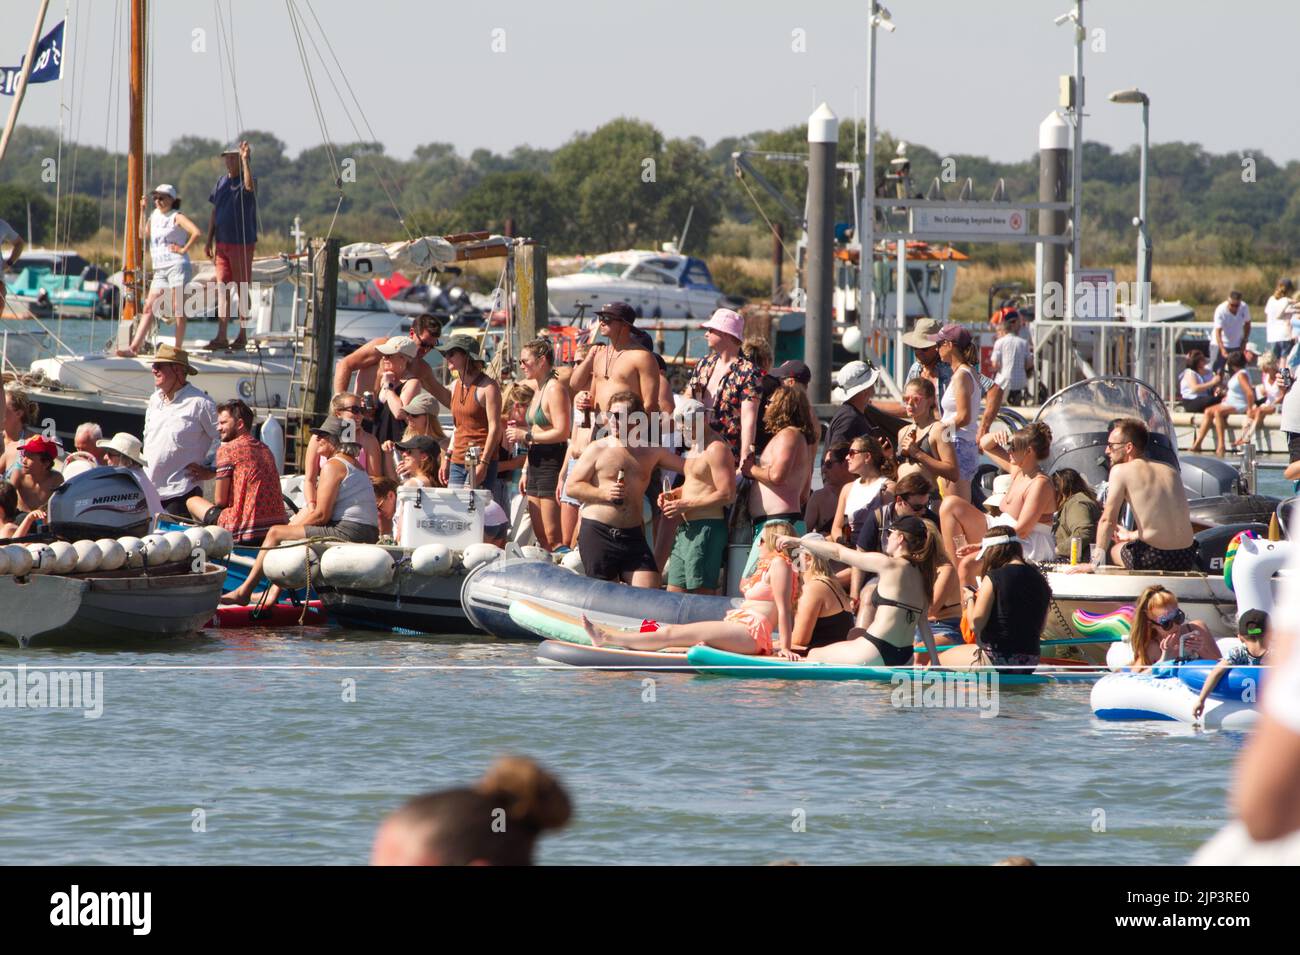 West Mersea Town Regatta auf Mersea Island in Essex. Menschenmengen, die am Regatta-Tag die Sonne genießen. Stockfoto